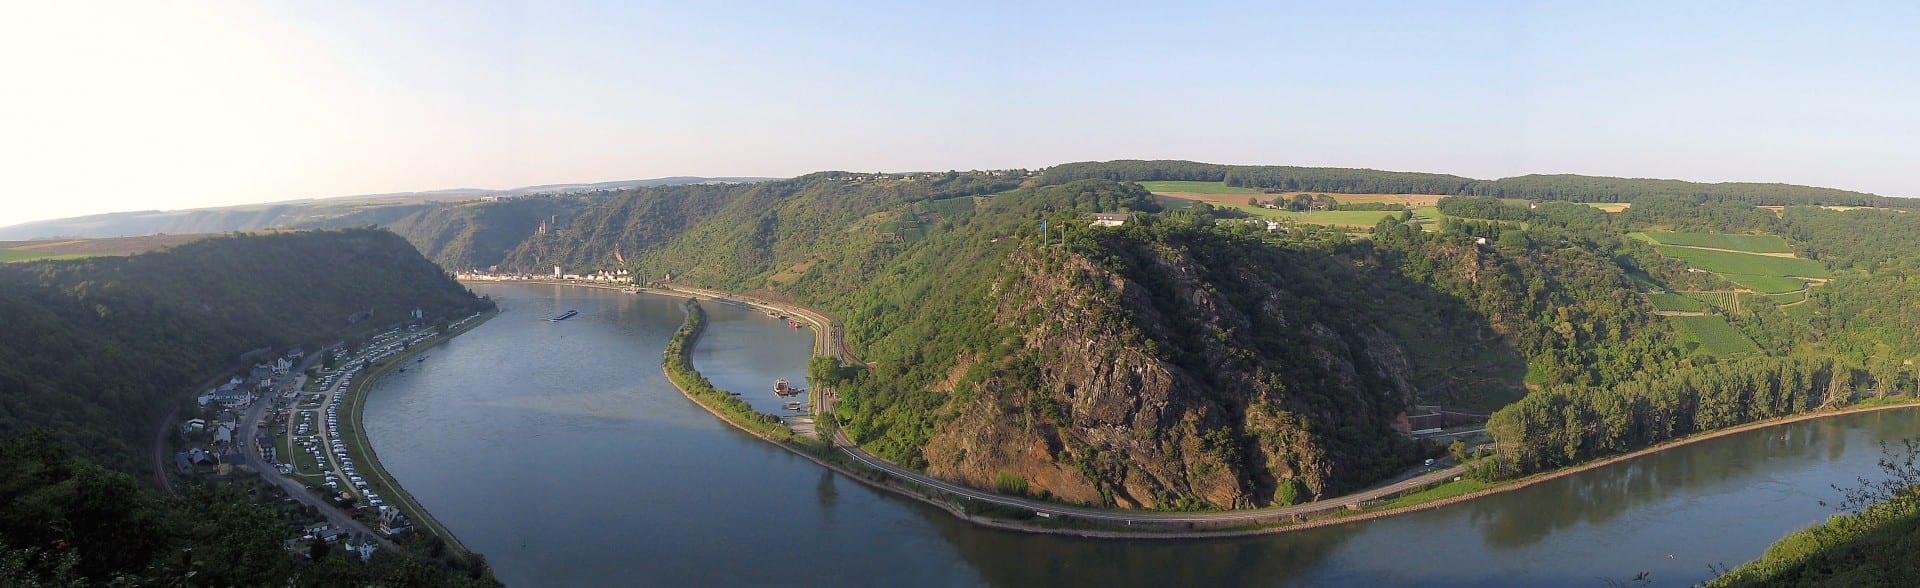 Lorely vista panorámica desde el lado izquierdo del Rin Sankt Goar Alemania